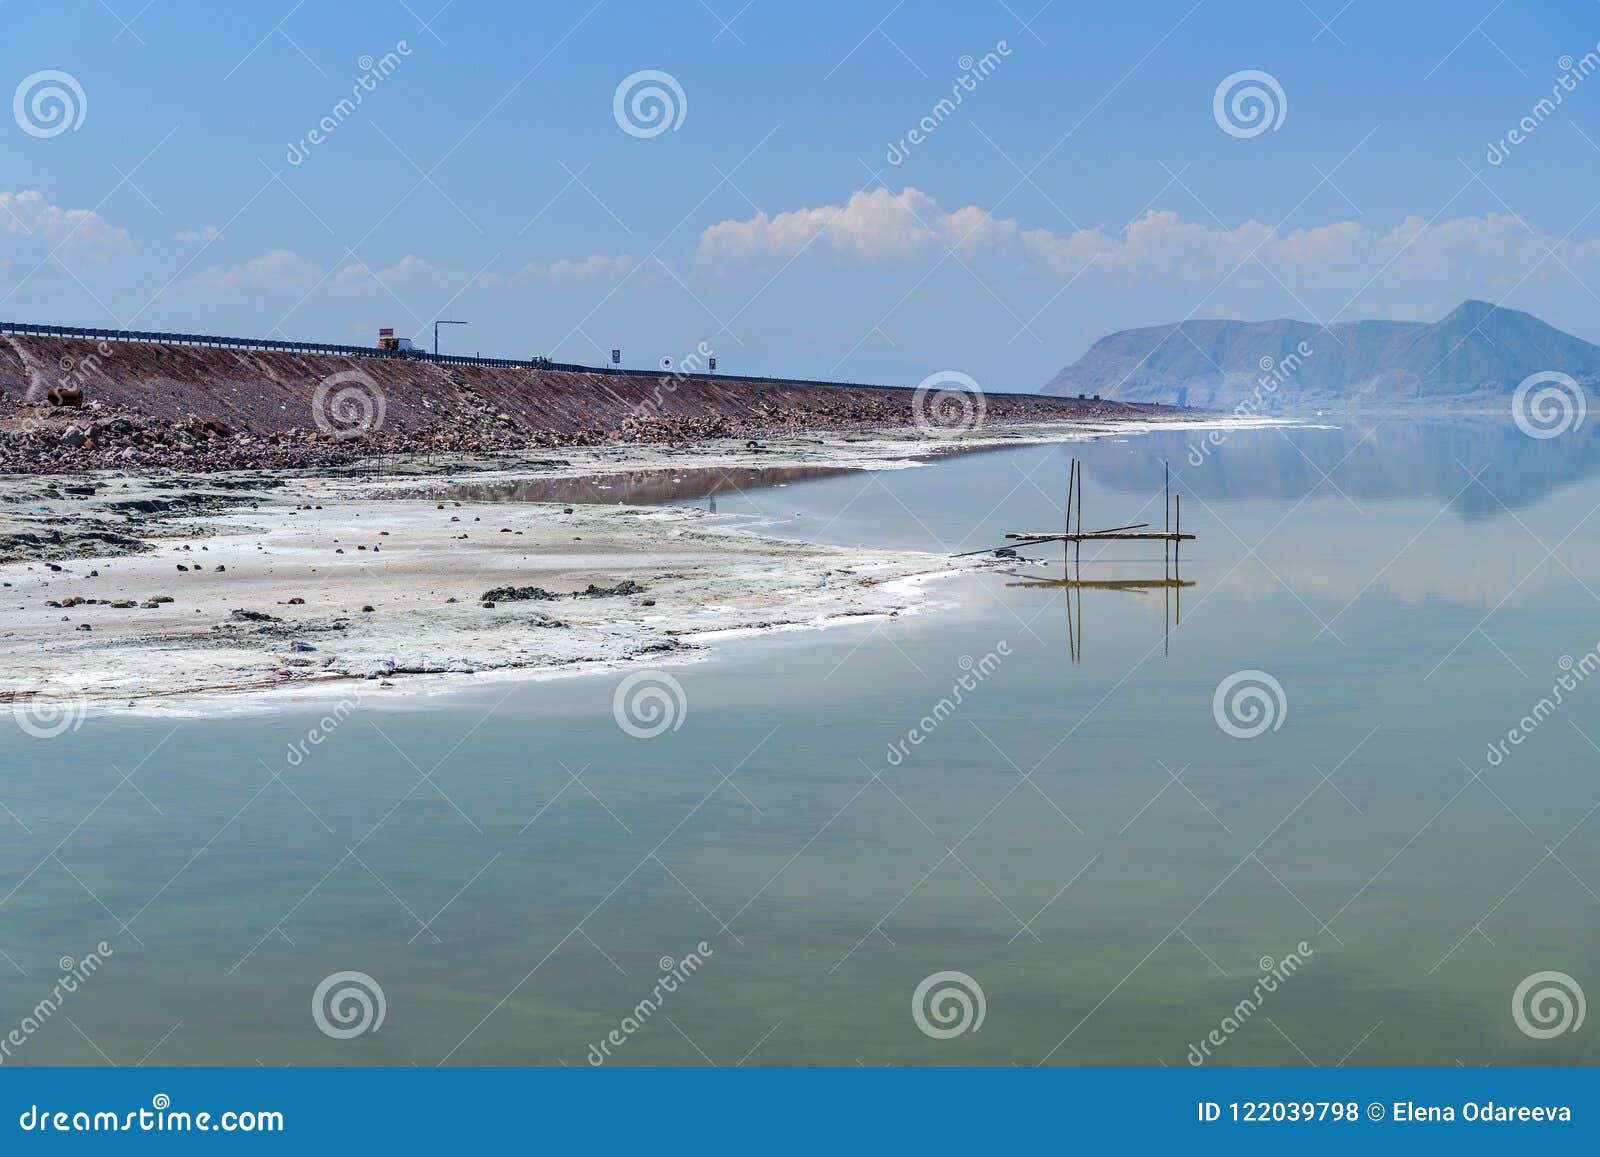 causeway on urmia salt lake. iran